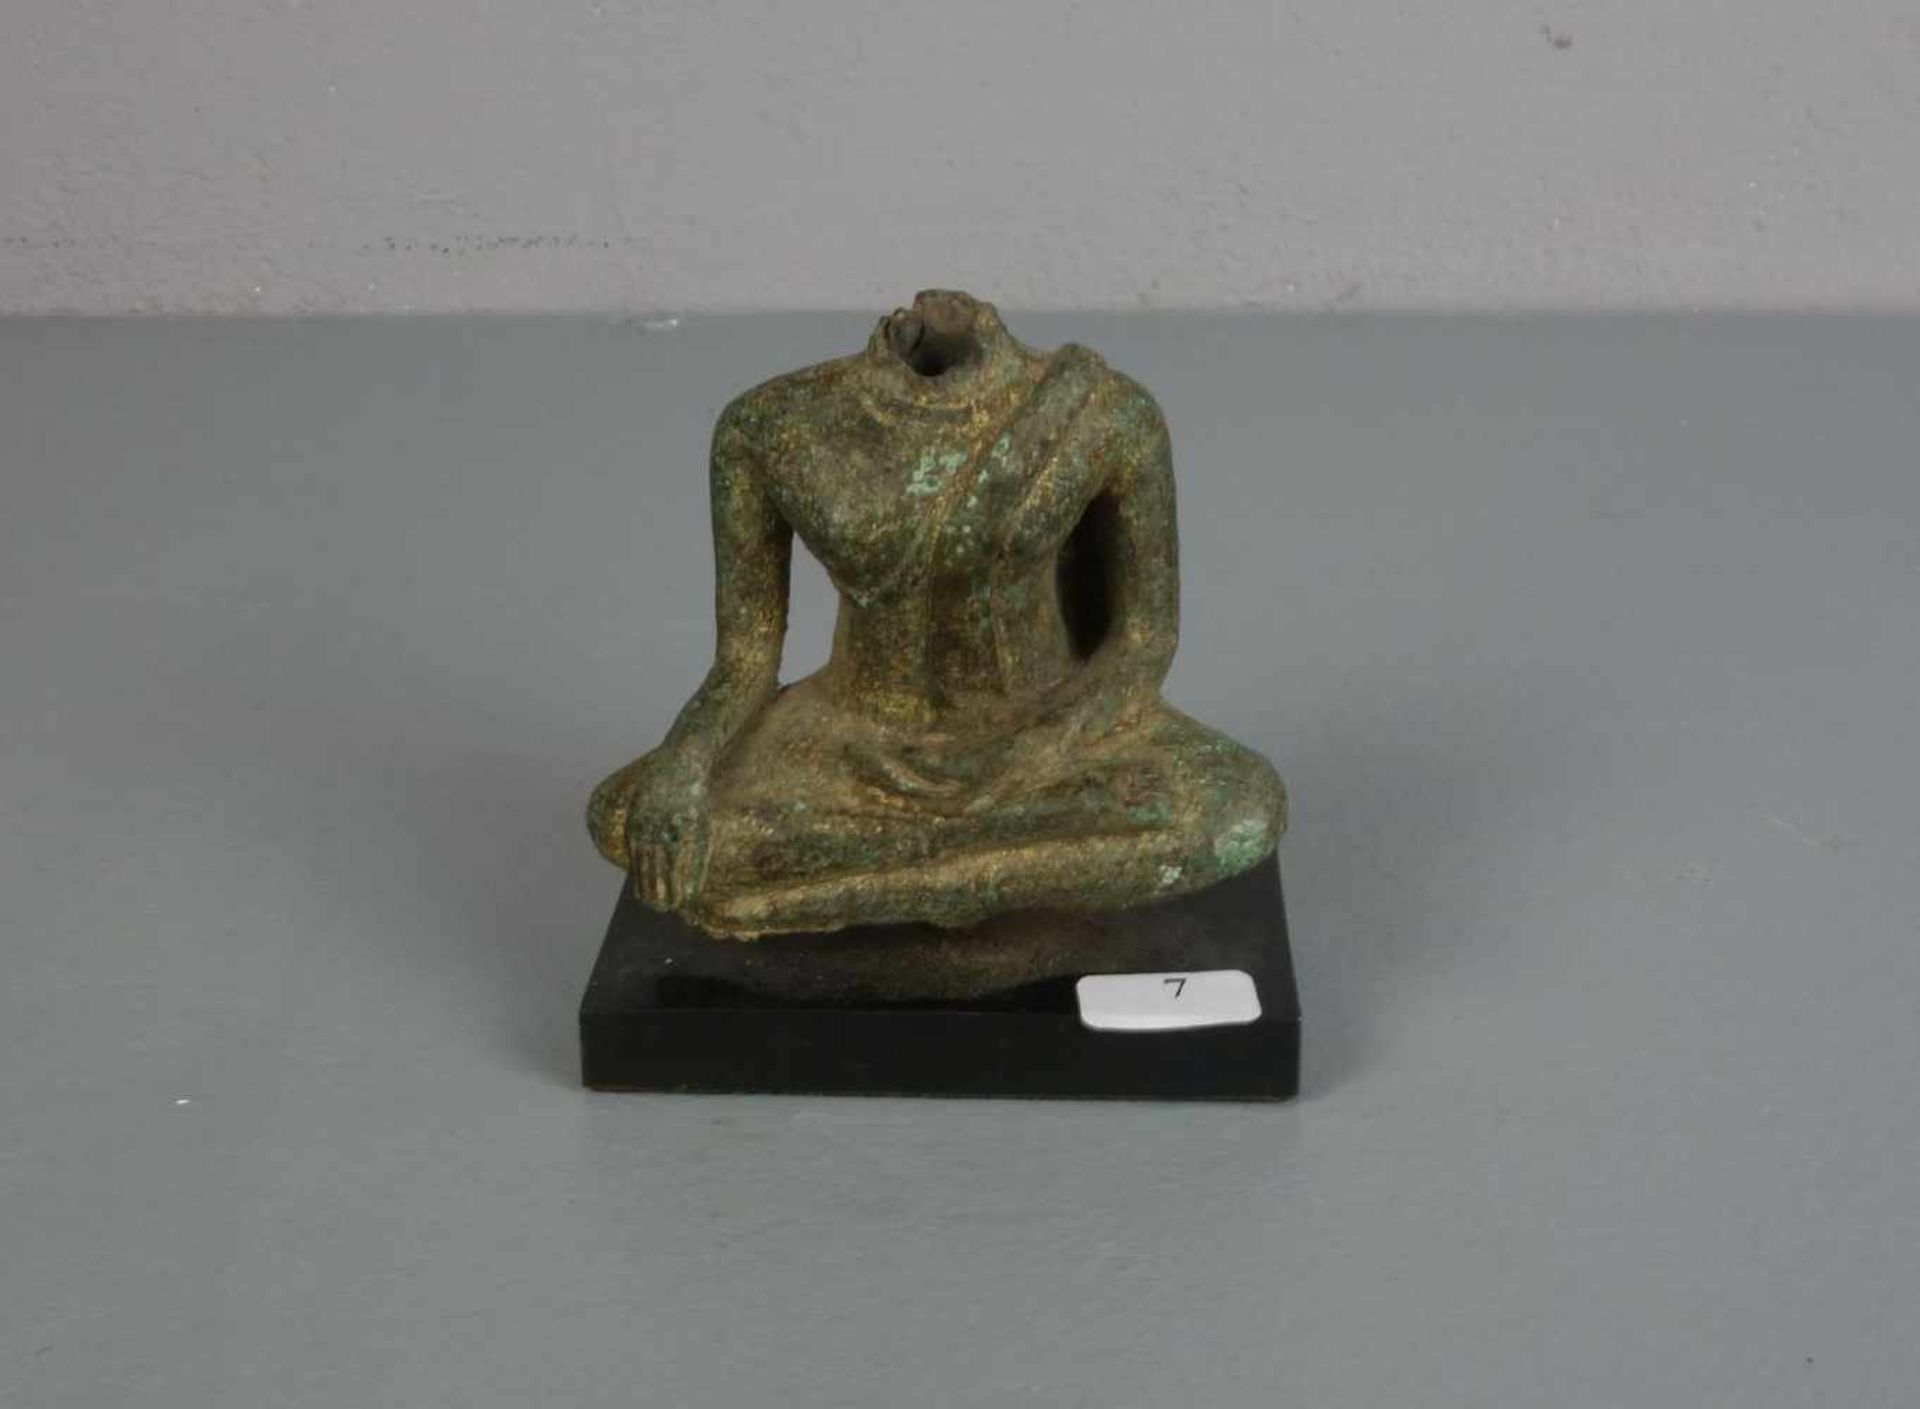 SKULPTUR: "Buddha" / Torso, Bronze, grün patiniert mit Vergoldungsresten, montiert auf Postament,